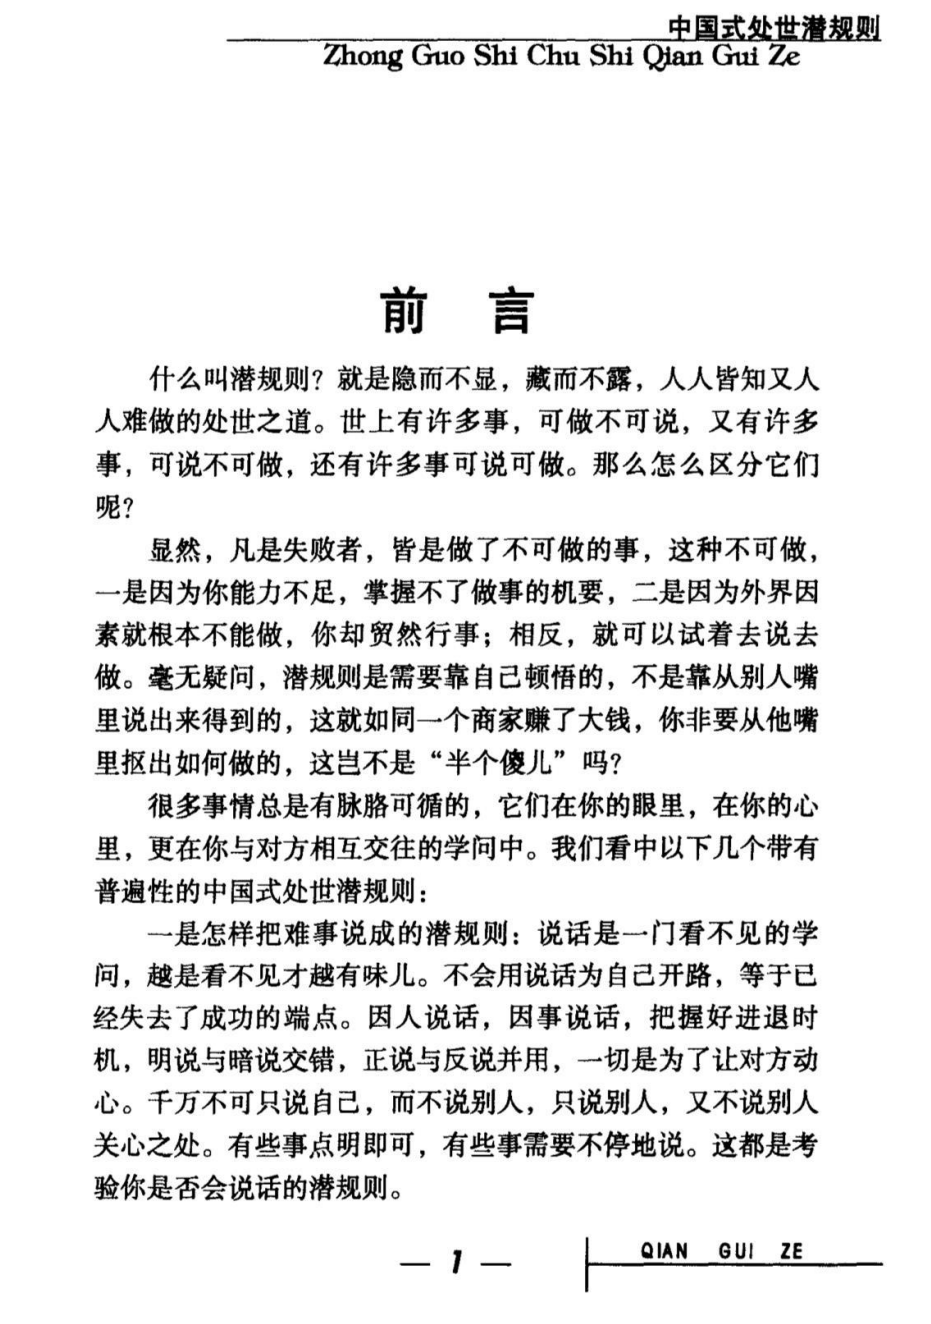 中国式处世潜规则[无水印]「百度网盘下载」PDF 电子书插图1